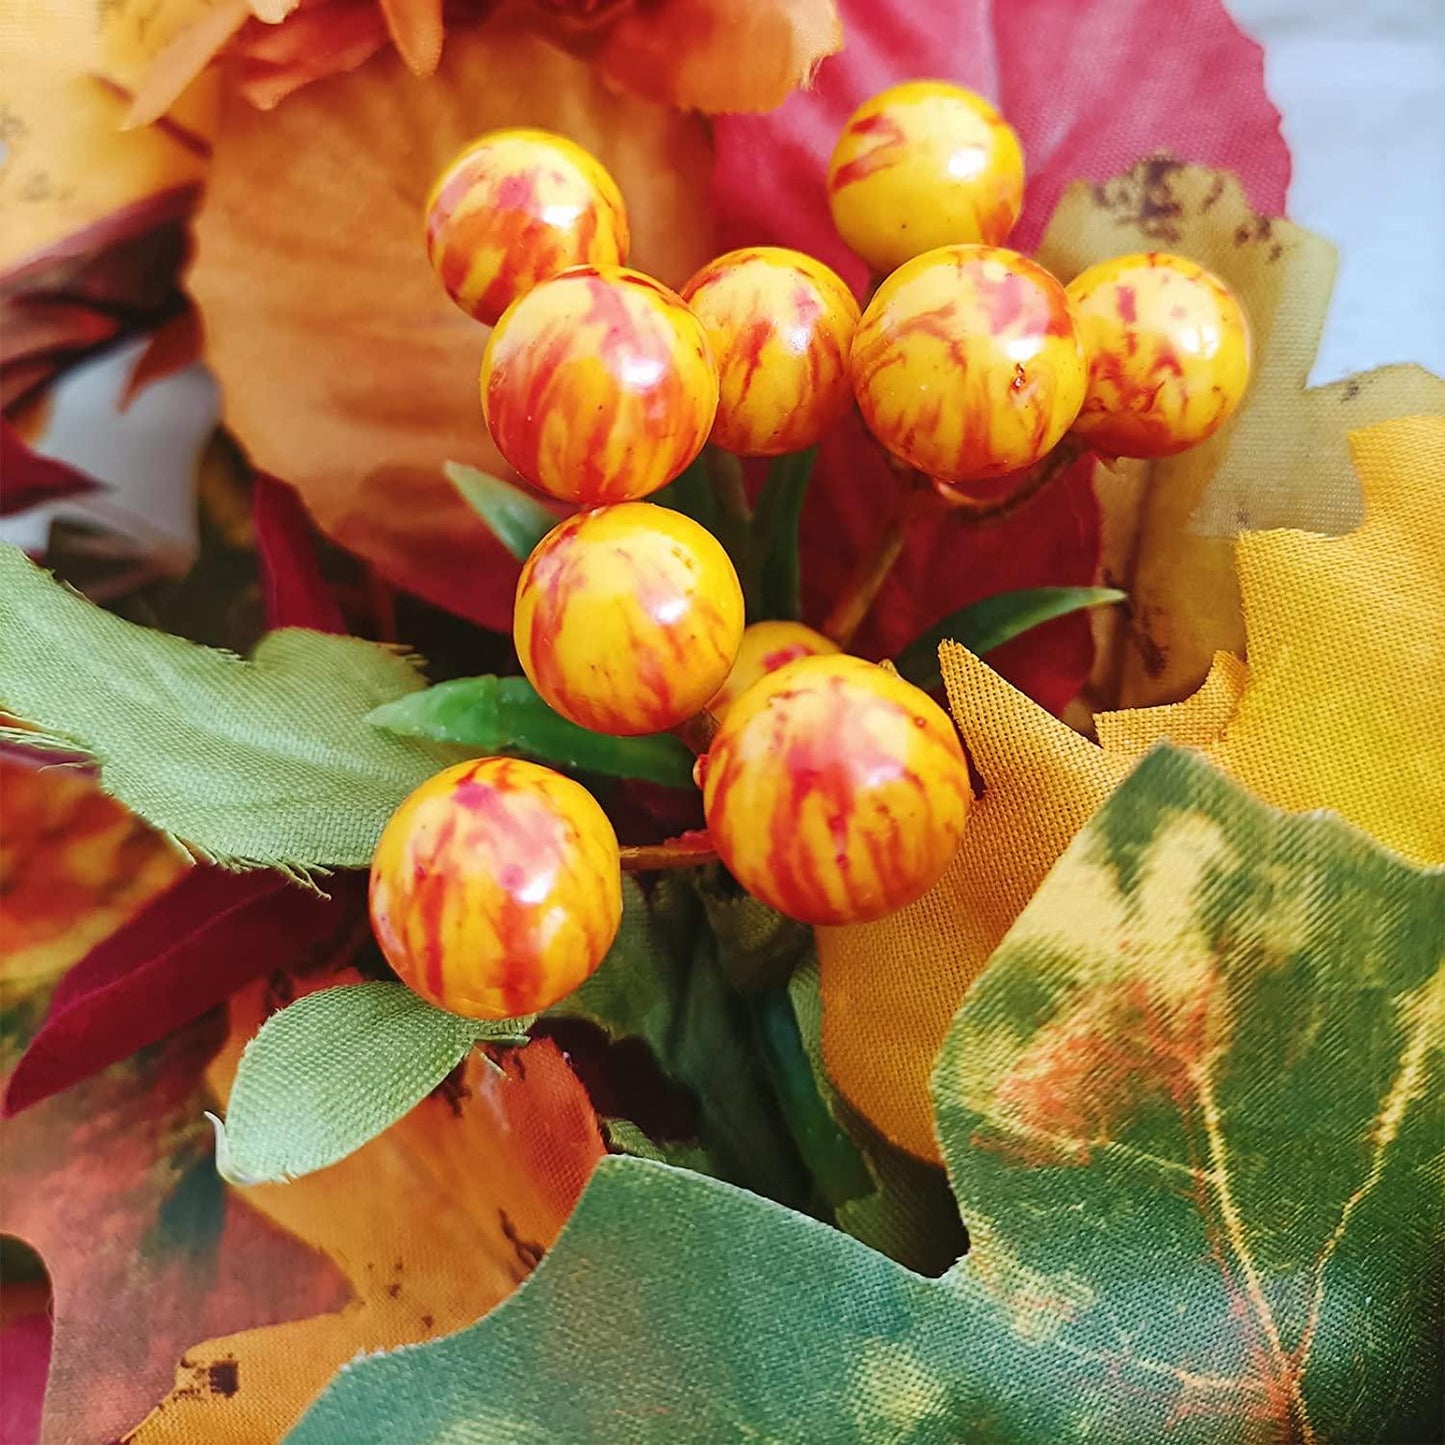 Herbstkranz für die Haustür, 20-Zoll-Herbst-Sonnenblumenkranz